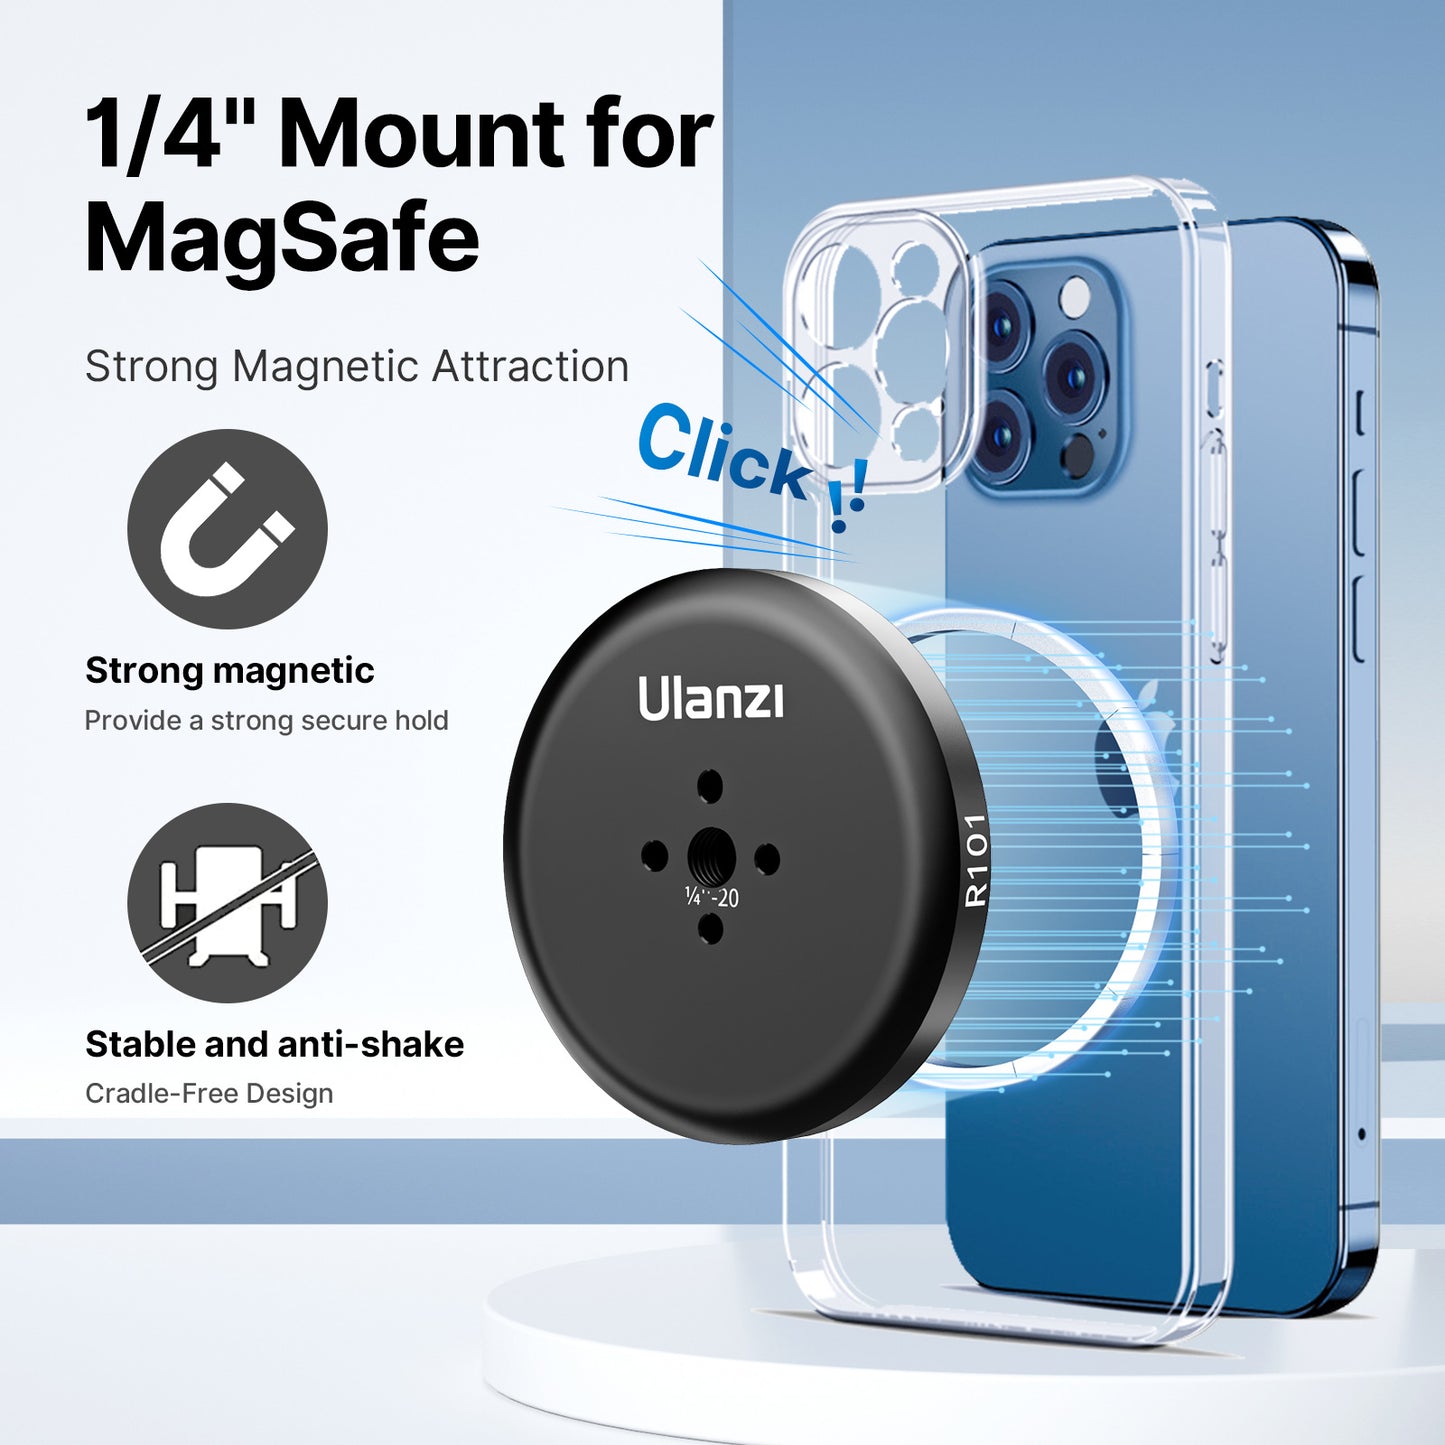 Ulanzi U-R101 magnetische Magsafe mount voor statief – Met 1/4 inch schroefgat